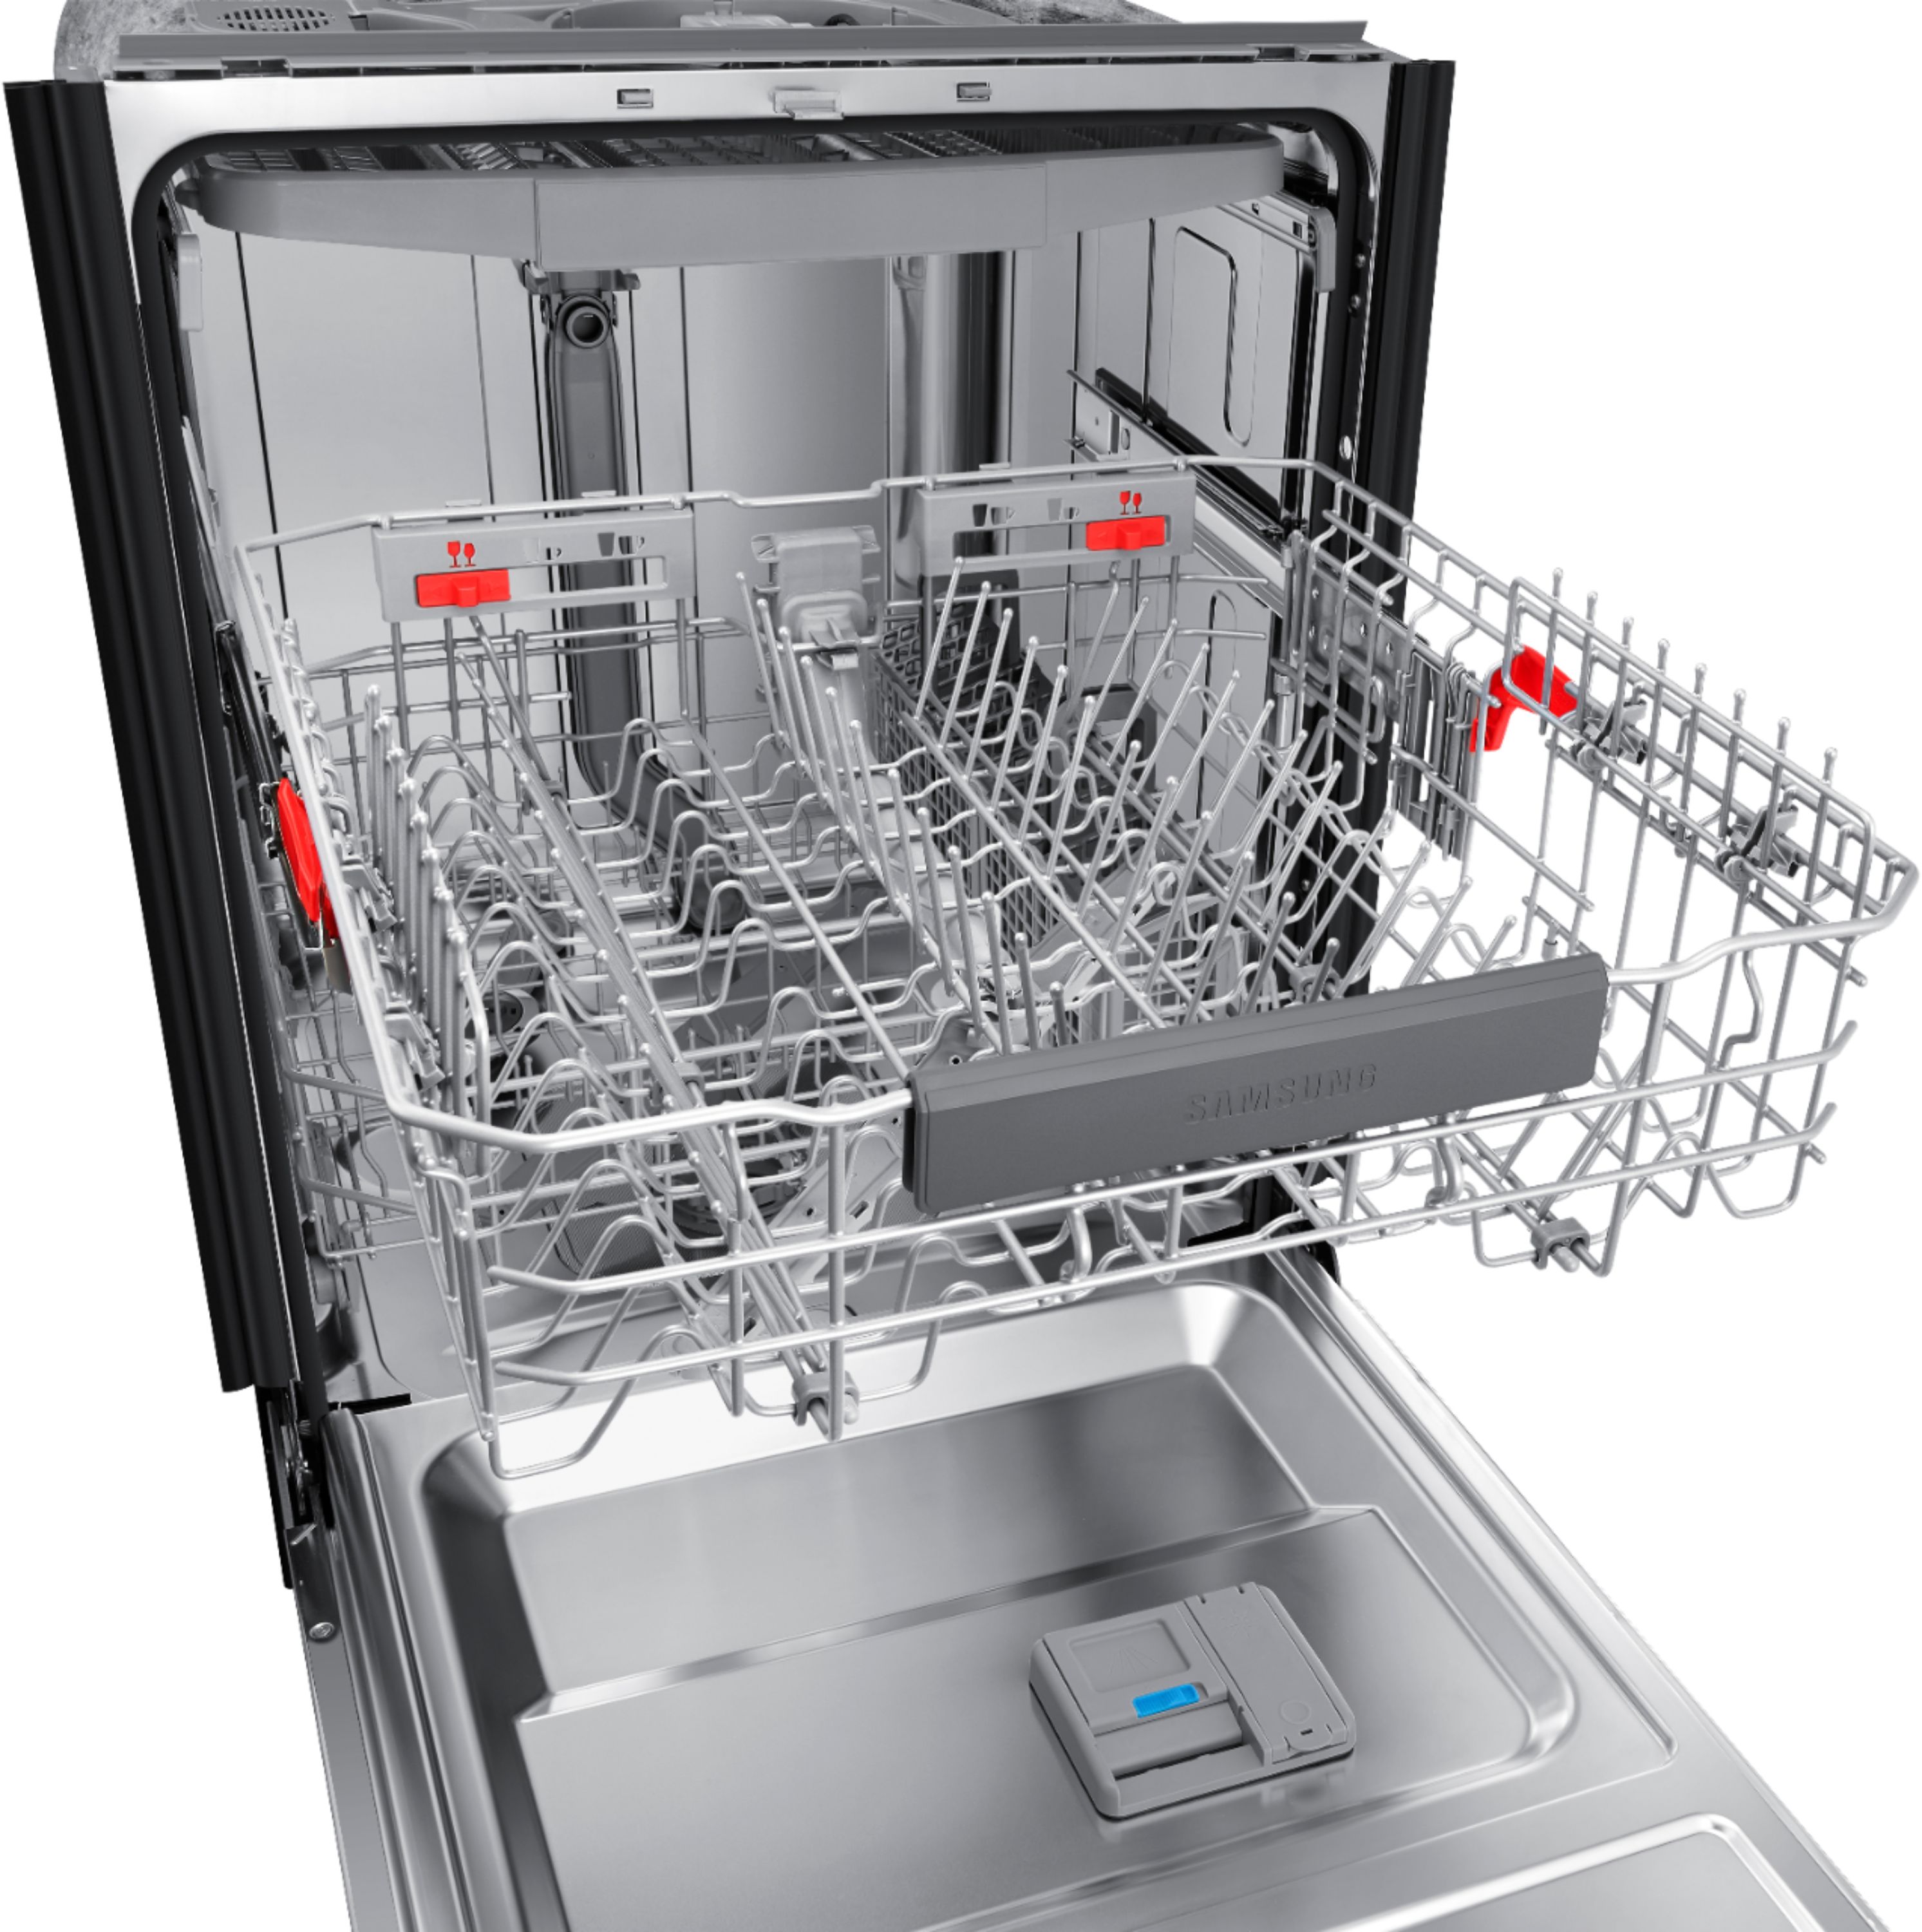 best samsung dishwasher 2016